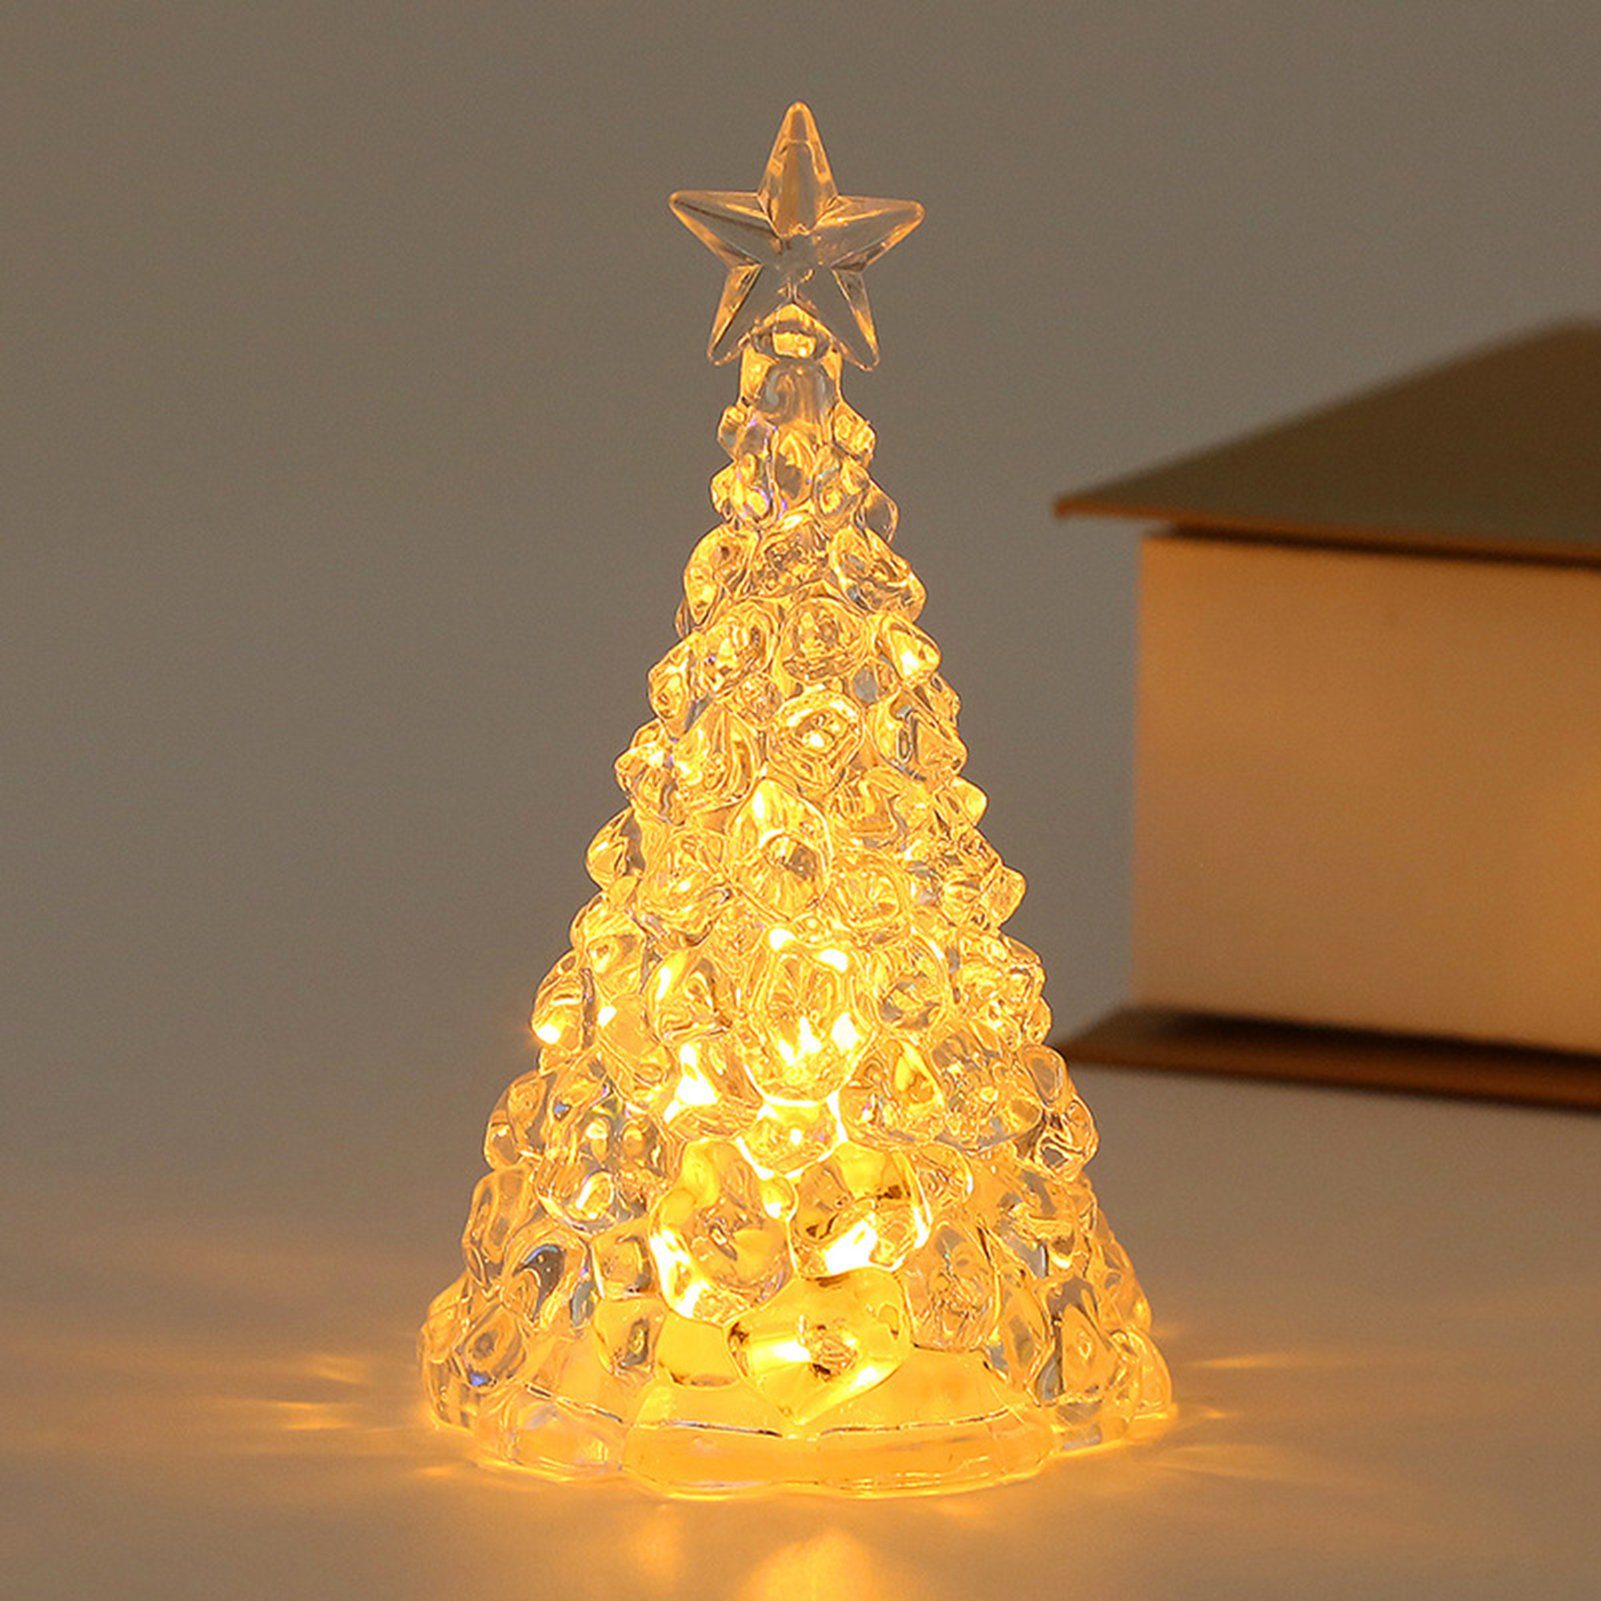 Rutaqian LED Nachtlicht 4 Stück Weihnachtsbaum Nachtlicht Heiligabend Geschenk LED Kerzenlicht, Weihnachtsdekorationen Desktop Ornament Kristall Nachtlicht Gold | Nachtlichter